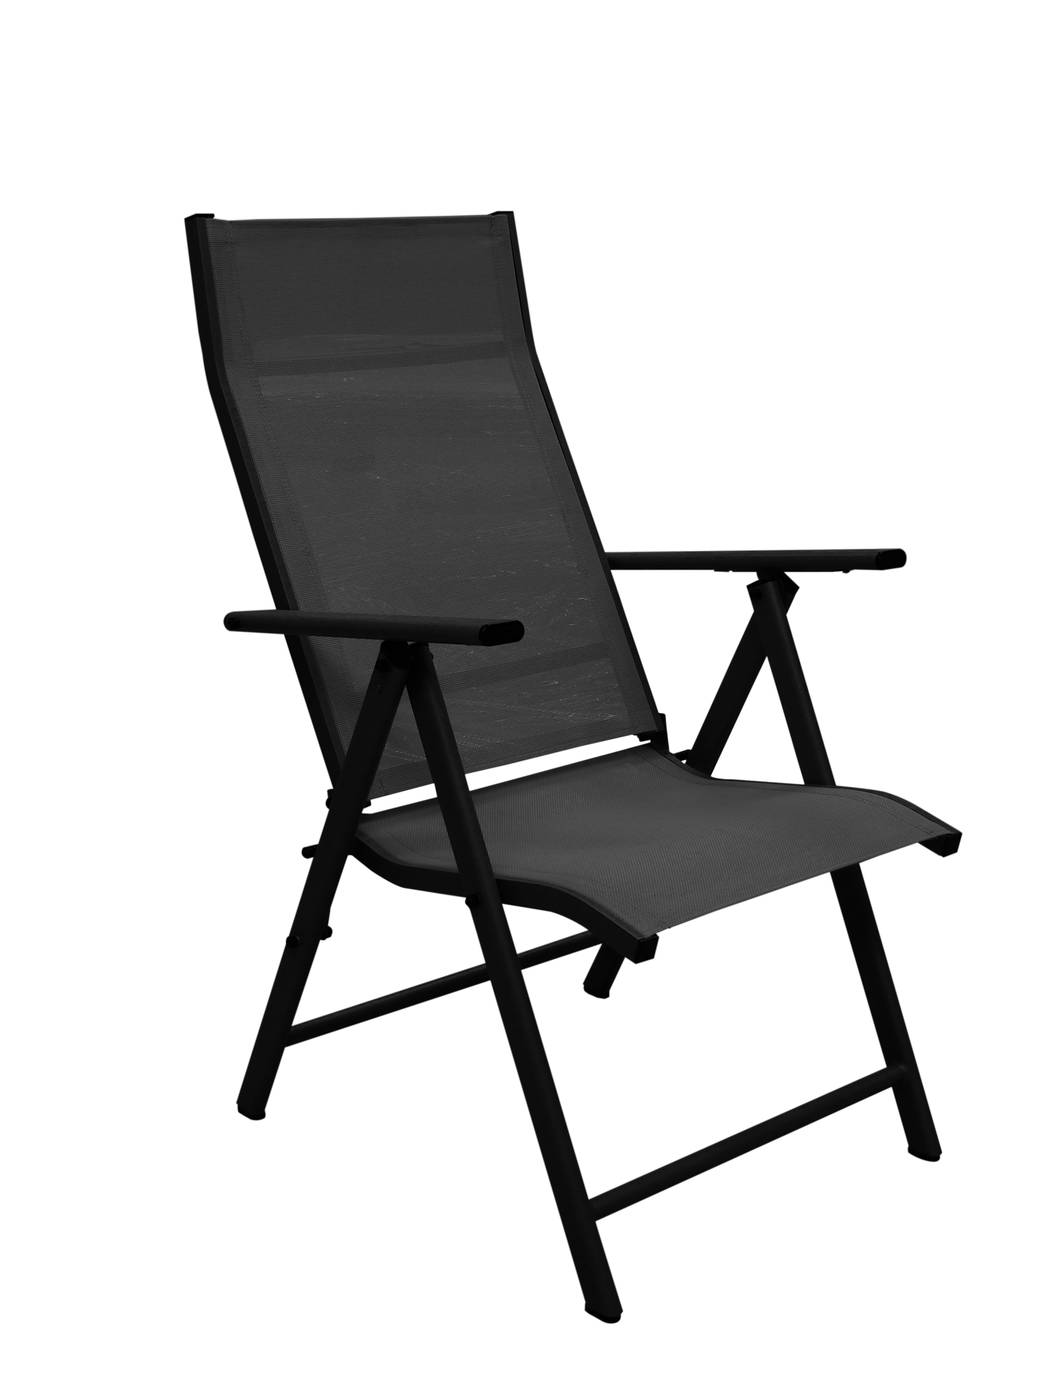 Set Aluminio Palma-Saporo - Conjunto aluminio color antracita: Mesa rectangular 150 cm + 4 tumbonas con asiento y respaldo textilen.